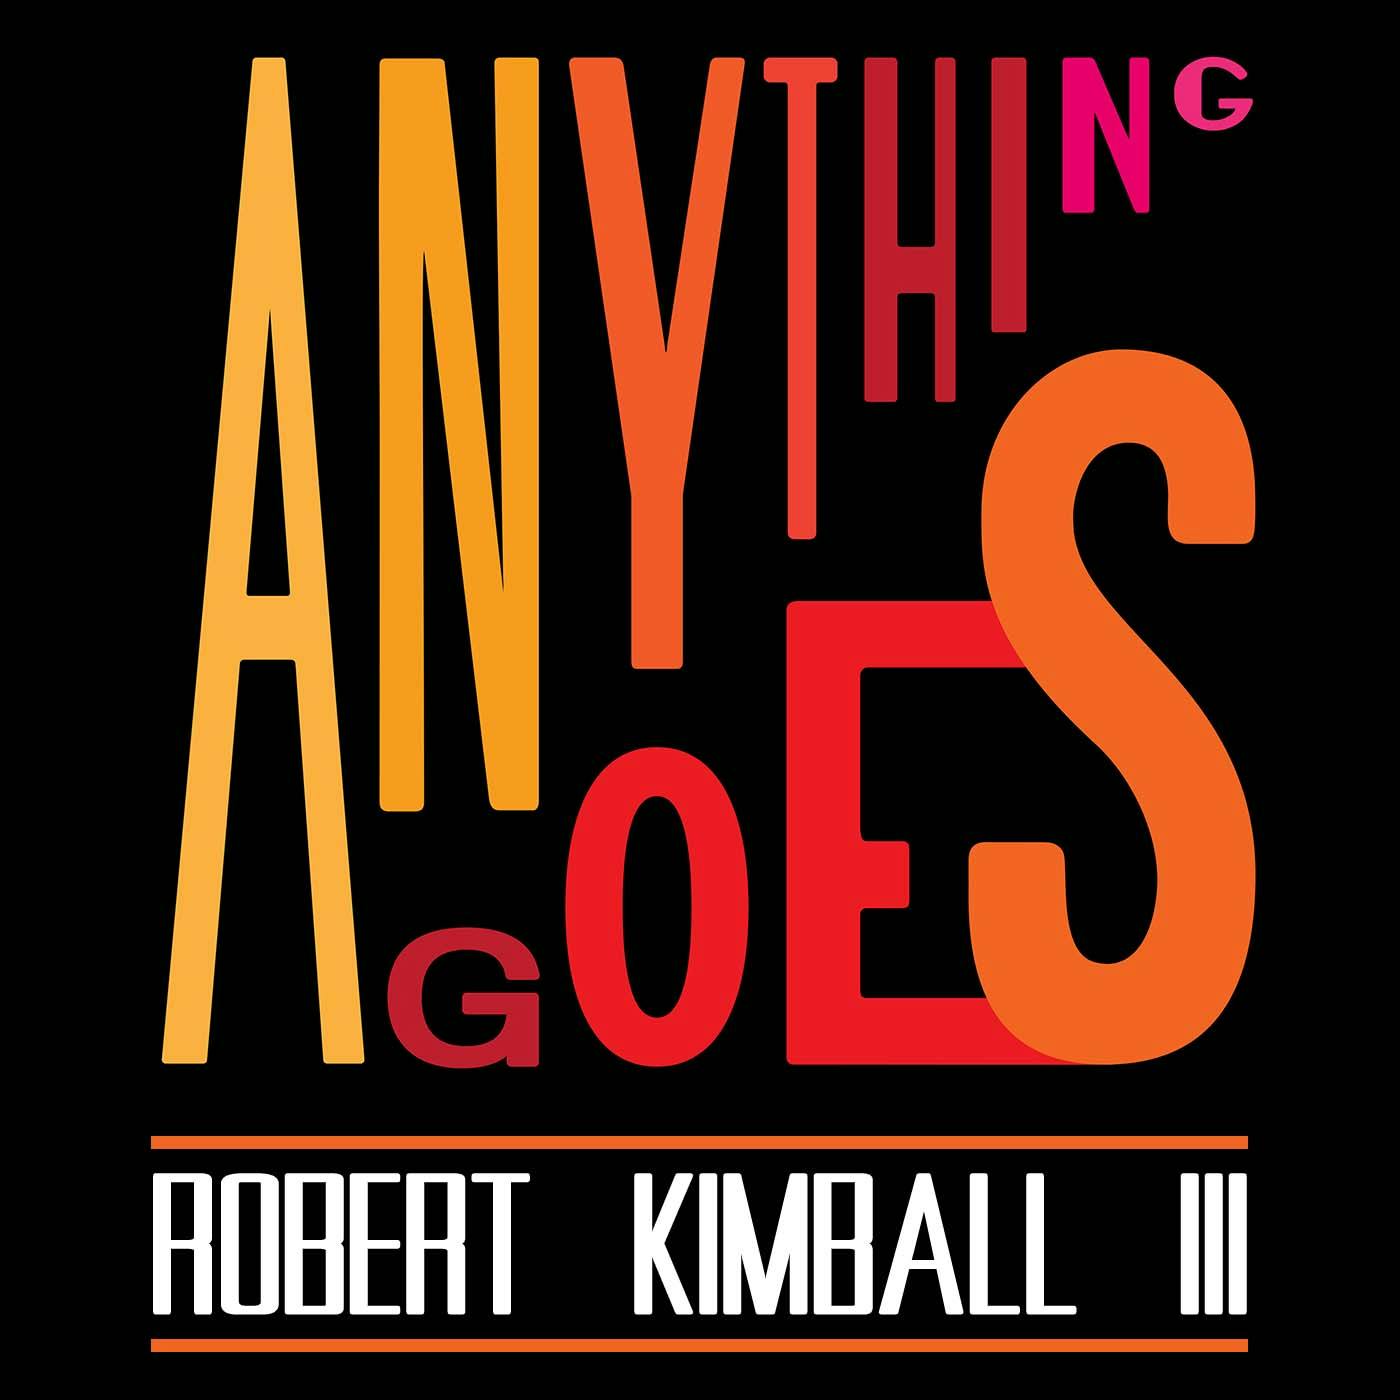 60 Robert Kimball III